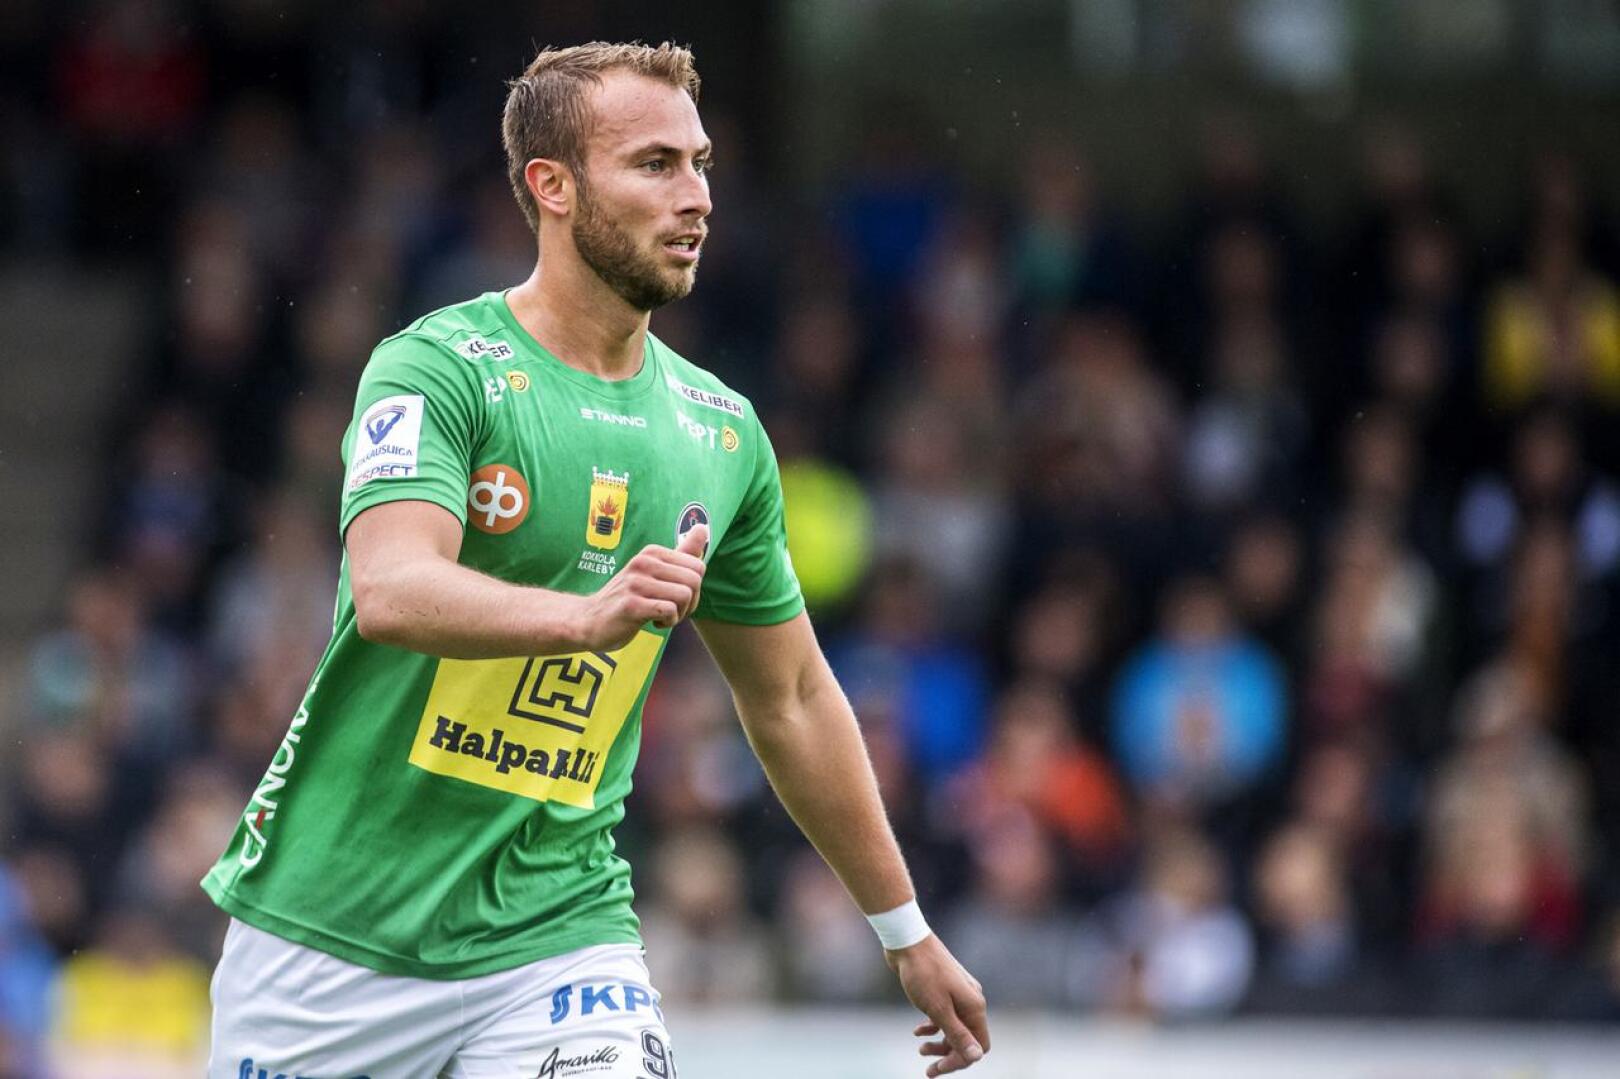 Kaudella 2019 Patrick Byskata pelasi KPV:ssa. Viime kausi Norjassa oli vaikea monella tavalla.